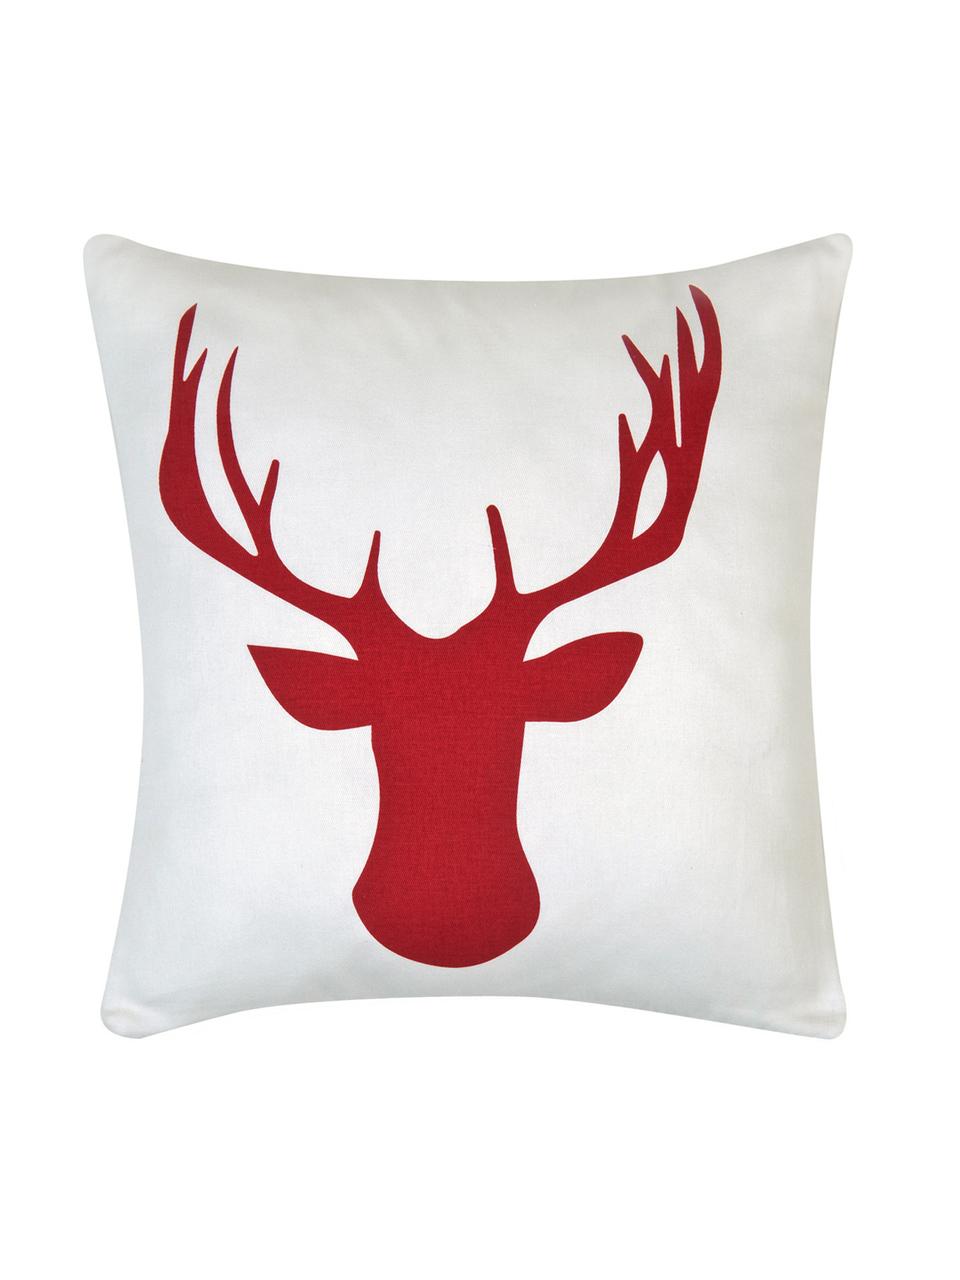 Kissenhülle Deer mit Hirschmotiv in Weiß/Rot, Baumwolle, Panamabindung, Dunkelrot, Ecru, 40 x 40 cm